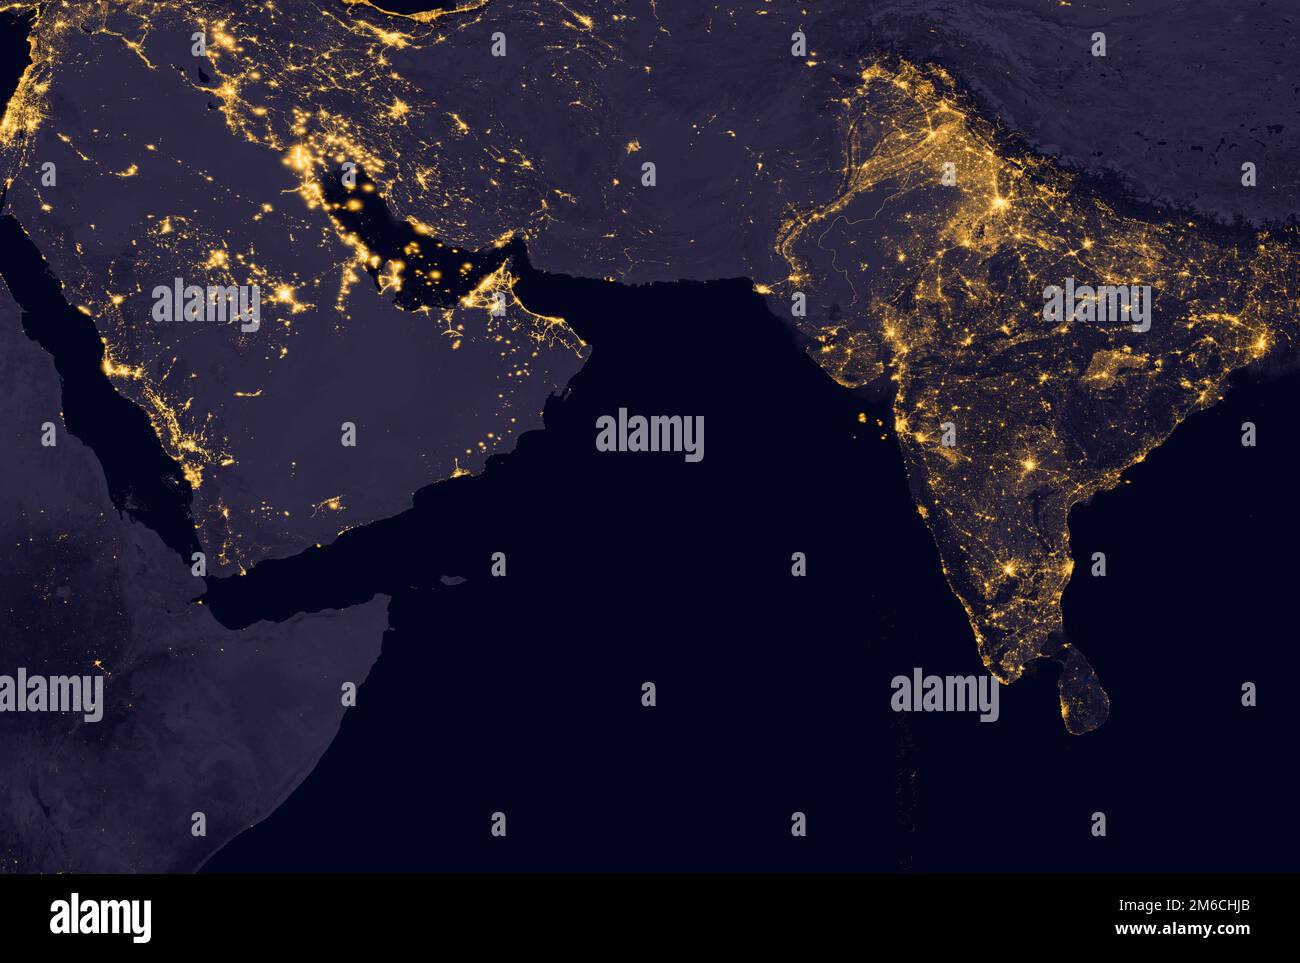 Indien leuchtet nachts, wie es aus dem All aussieht. Elemente dieses Bildes werden von der NASA bereitgestellt Stockfoto